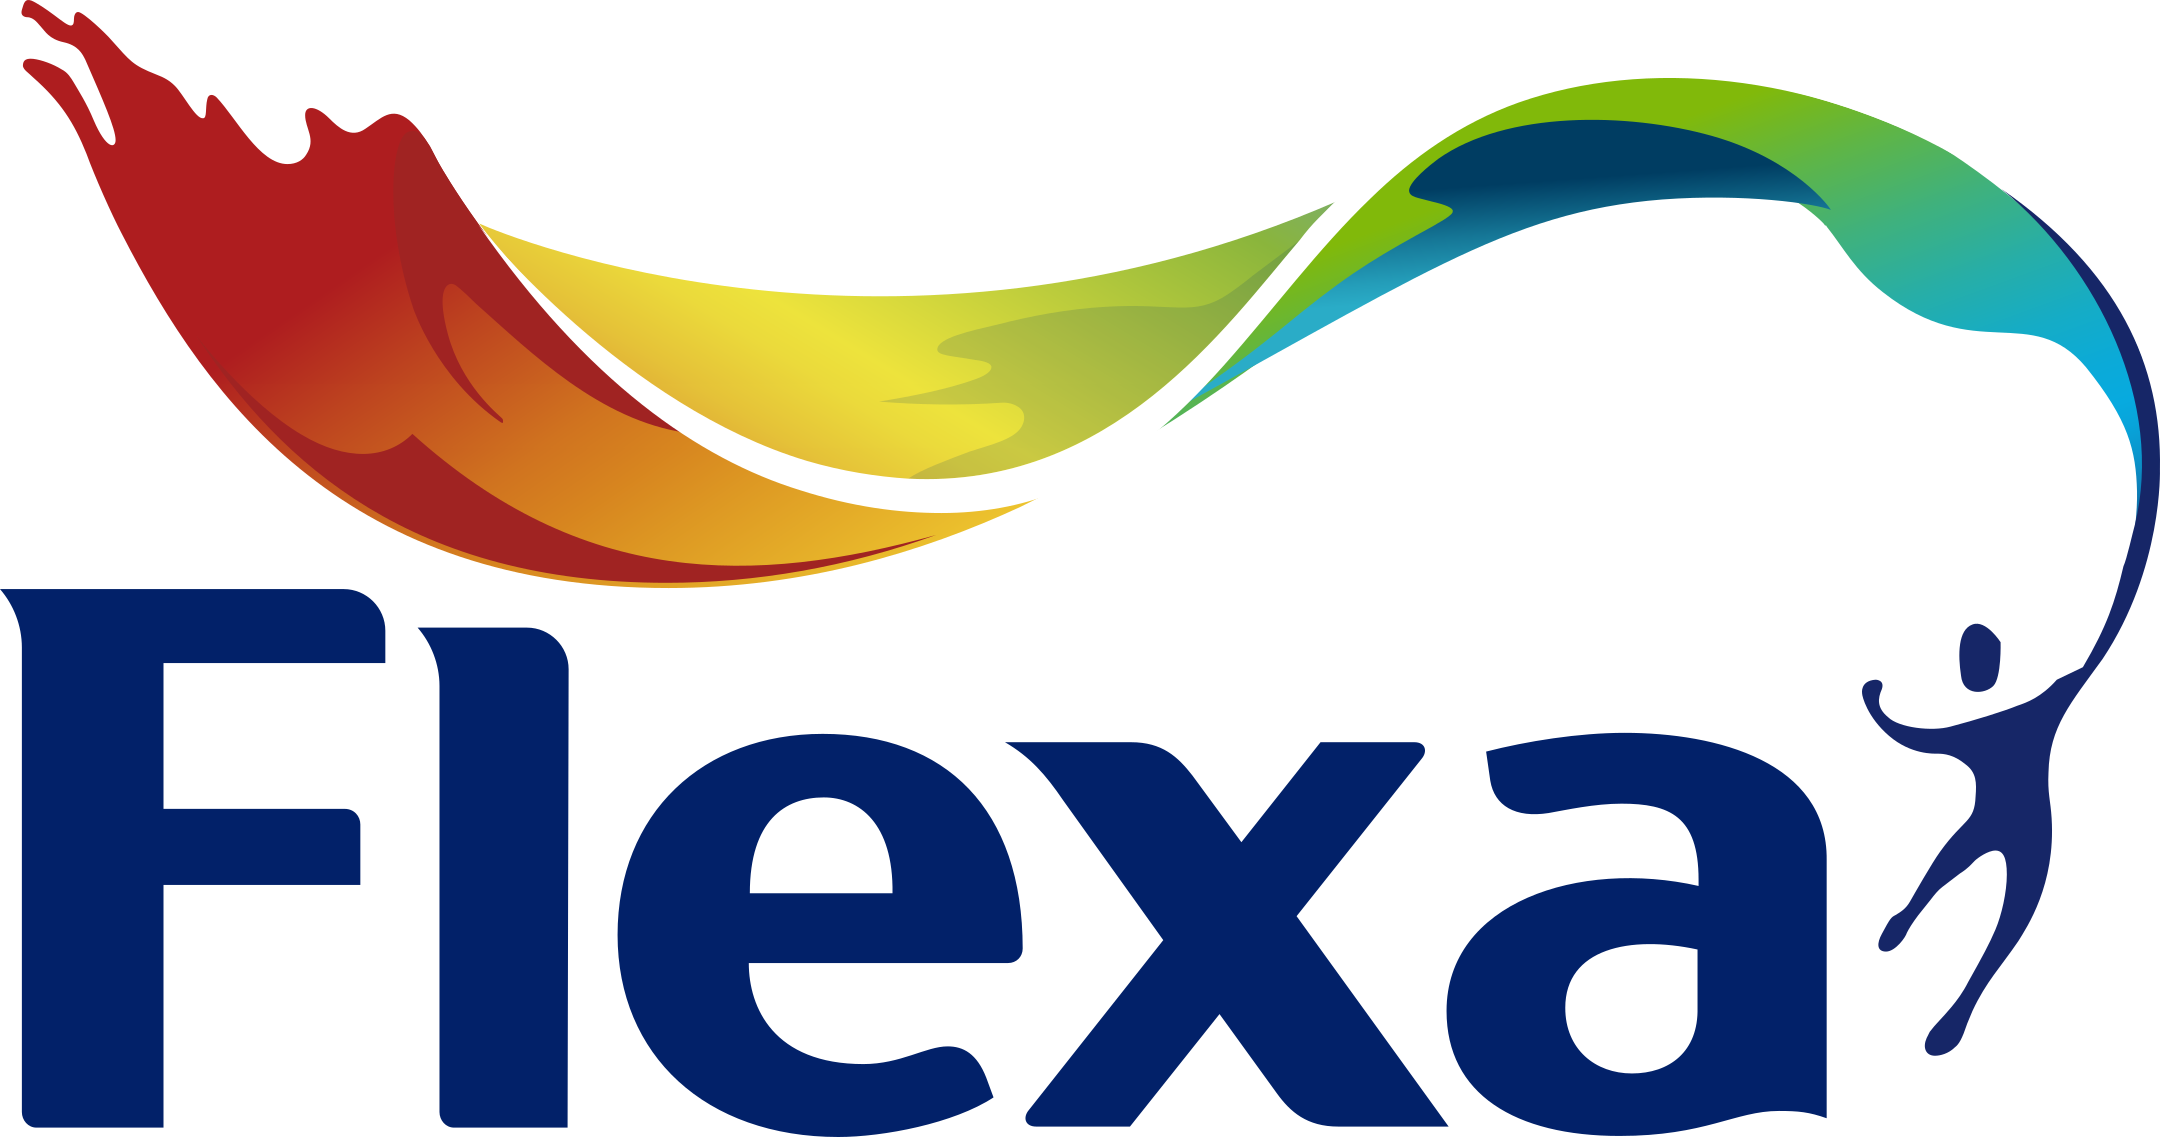 flexa logo 1 - Flexa Paints Logo